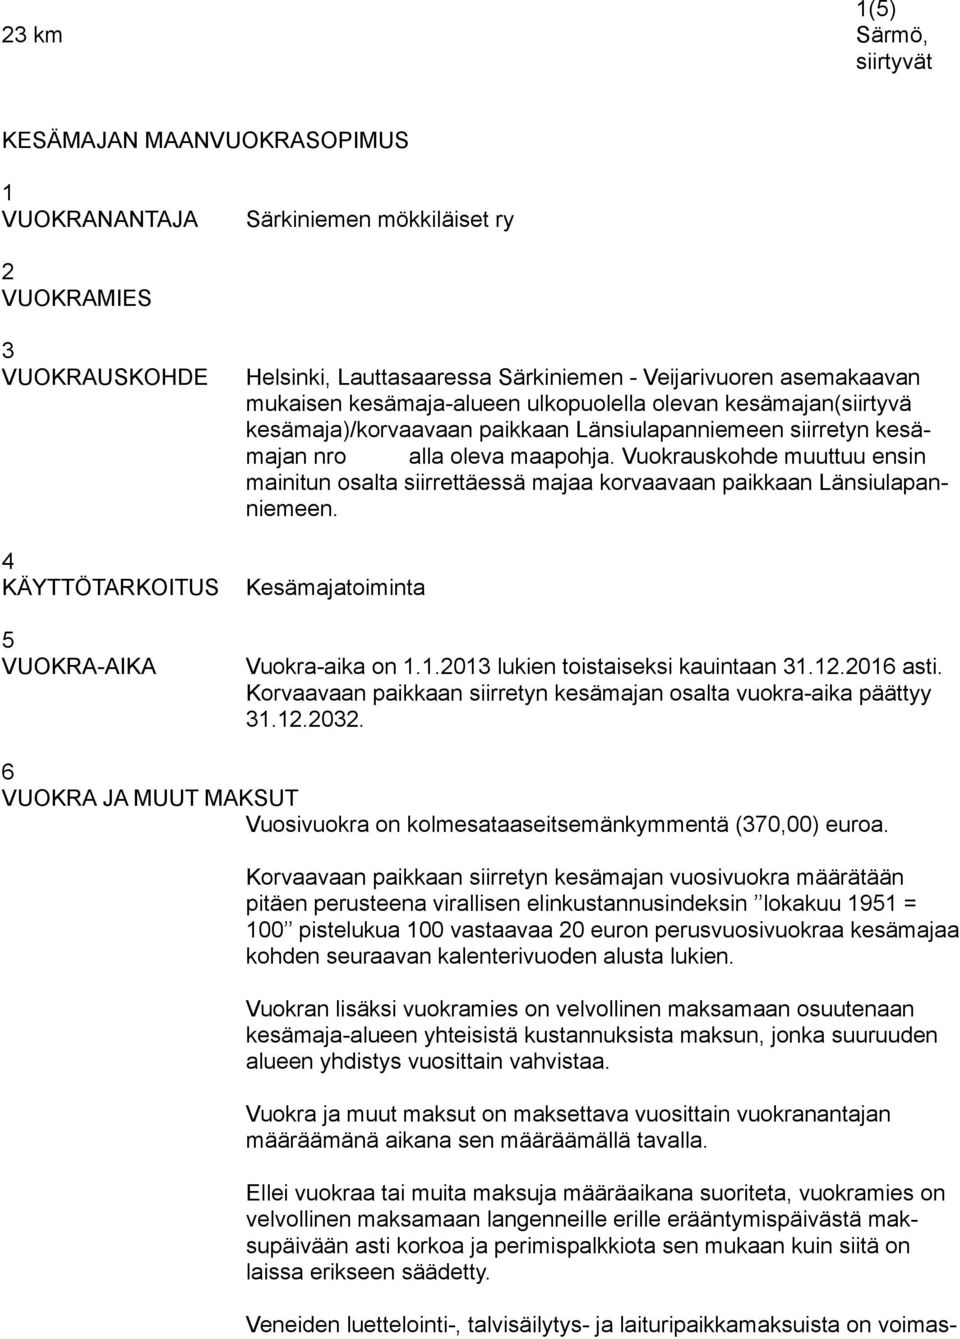 oleva maapohja. Vuokrauskohde muuttuu ensin mainitun osalta siirrettäessä majaa korvaavaan paikkaan Länsiulapanniemeen. Kesämajatoiminta Vuokra-aika on 1.1.2013 lukien toistaiseksi kauintaan 31.12.